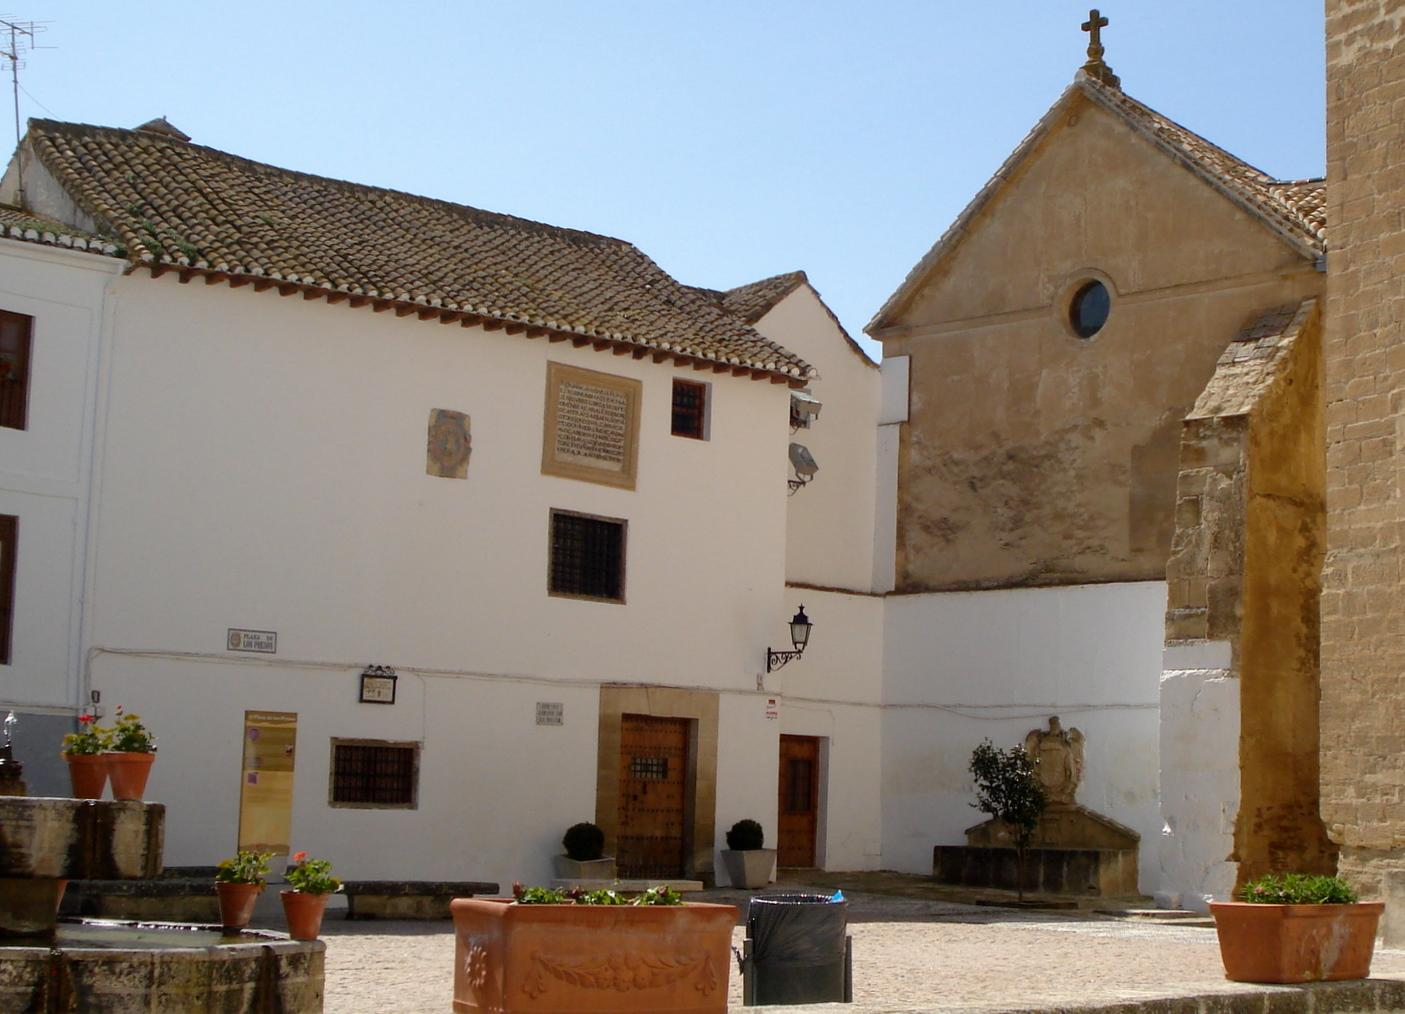 Centro de Interpretación Alhama de Granada (CIAG)